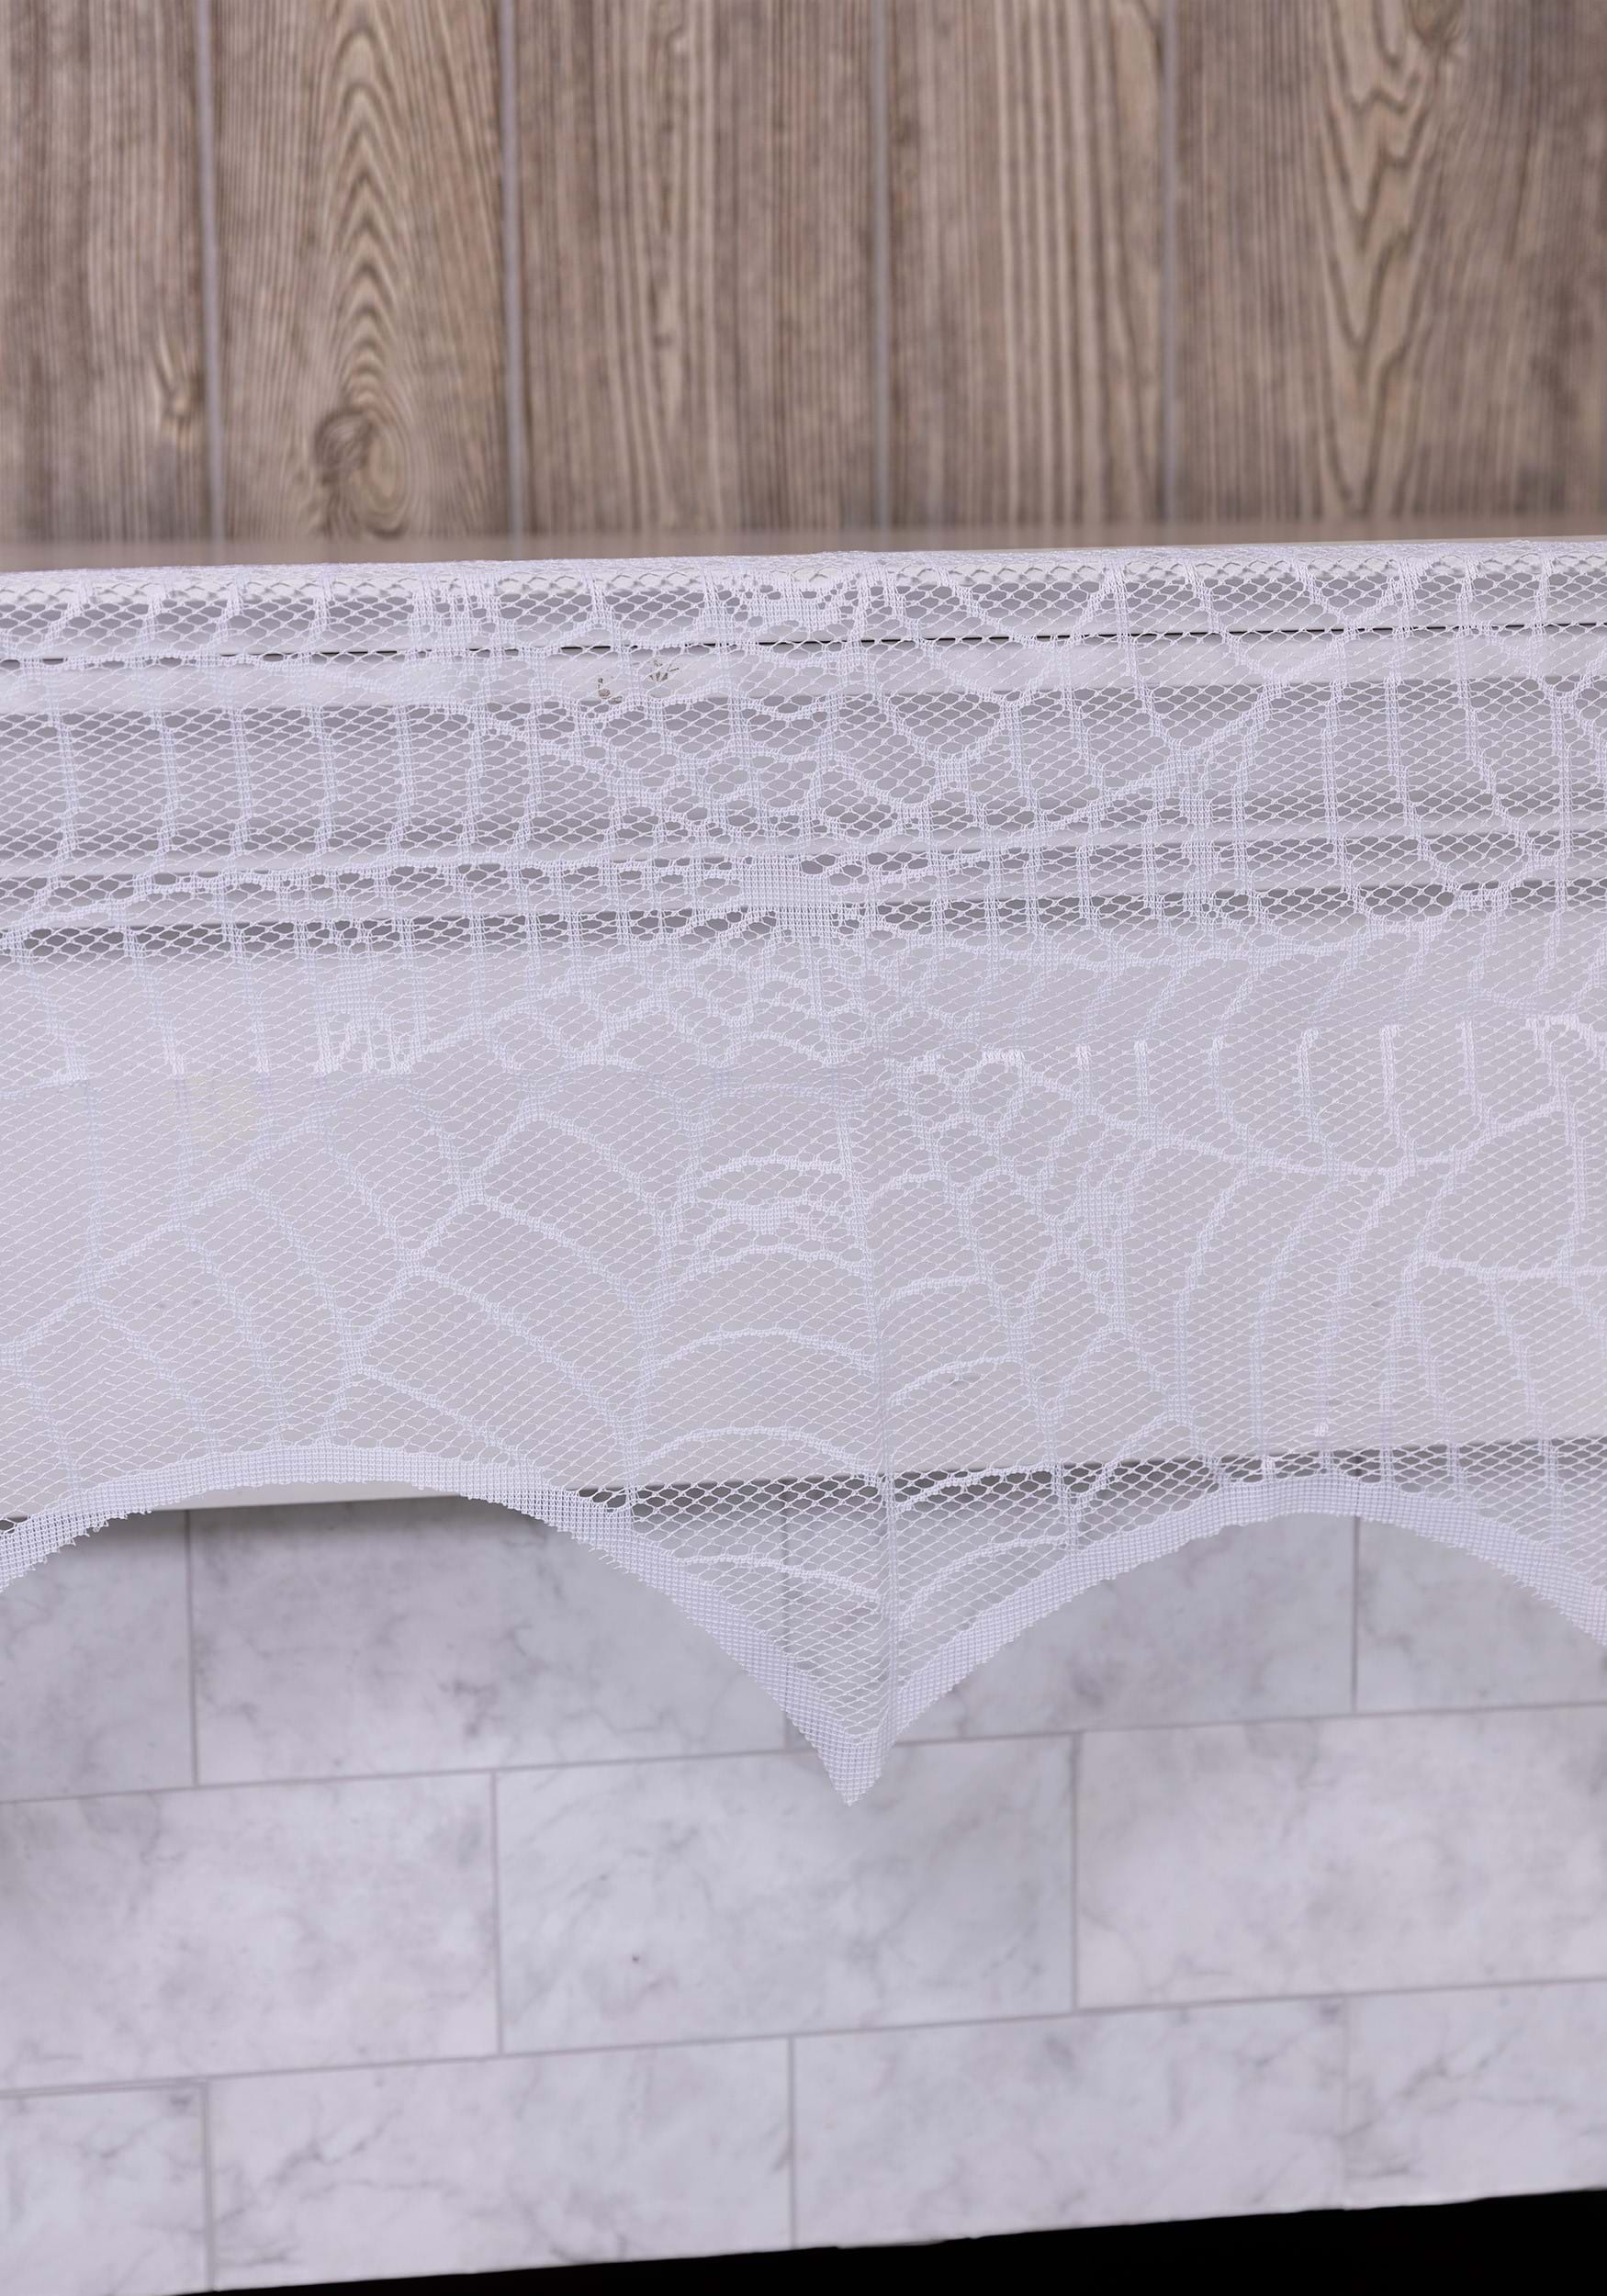 White Spider Web Mantel Scarf Halloween Decoration